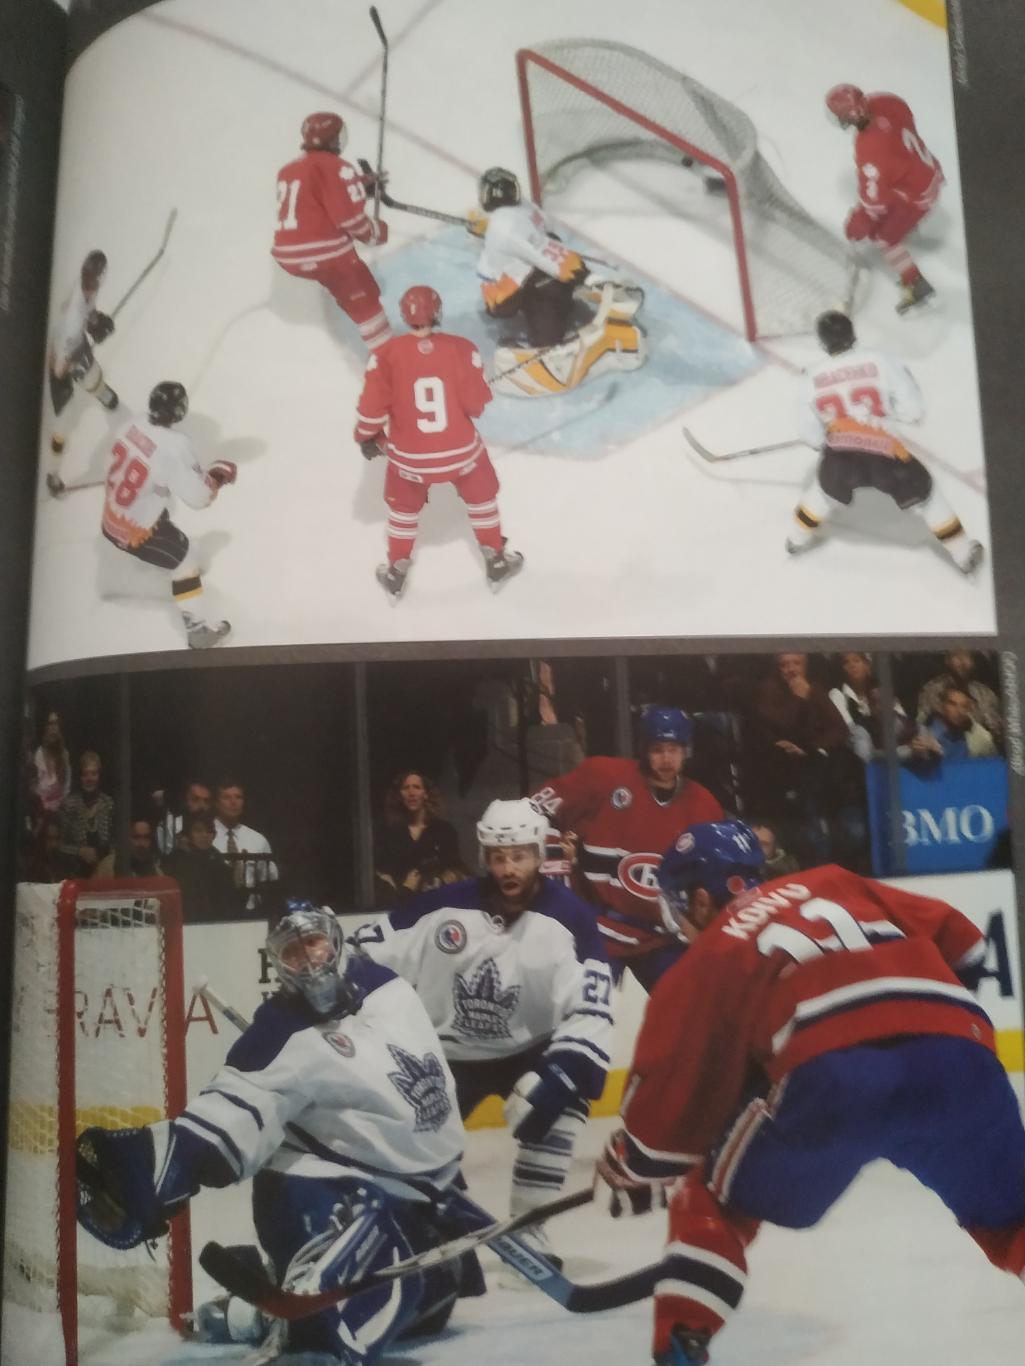 ХОККЕЙ ПРОГРАММА ЗАЛ СЛАВЫ НХЛ 2007 LEGENDS OF THE HHOF OFFICIAL PROGRAM 5